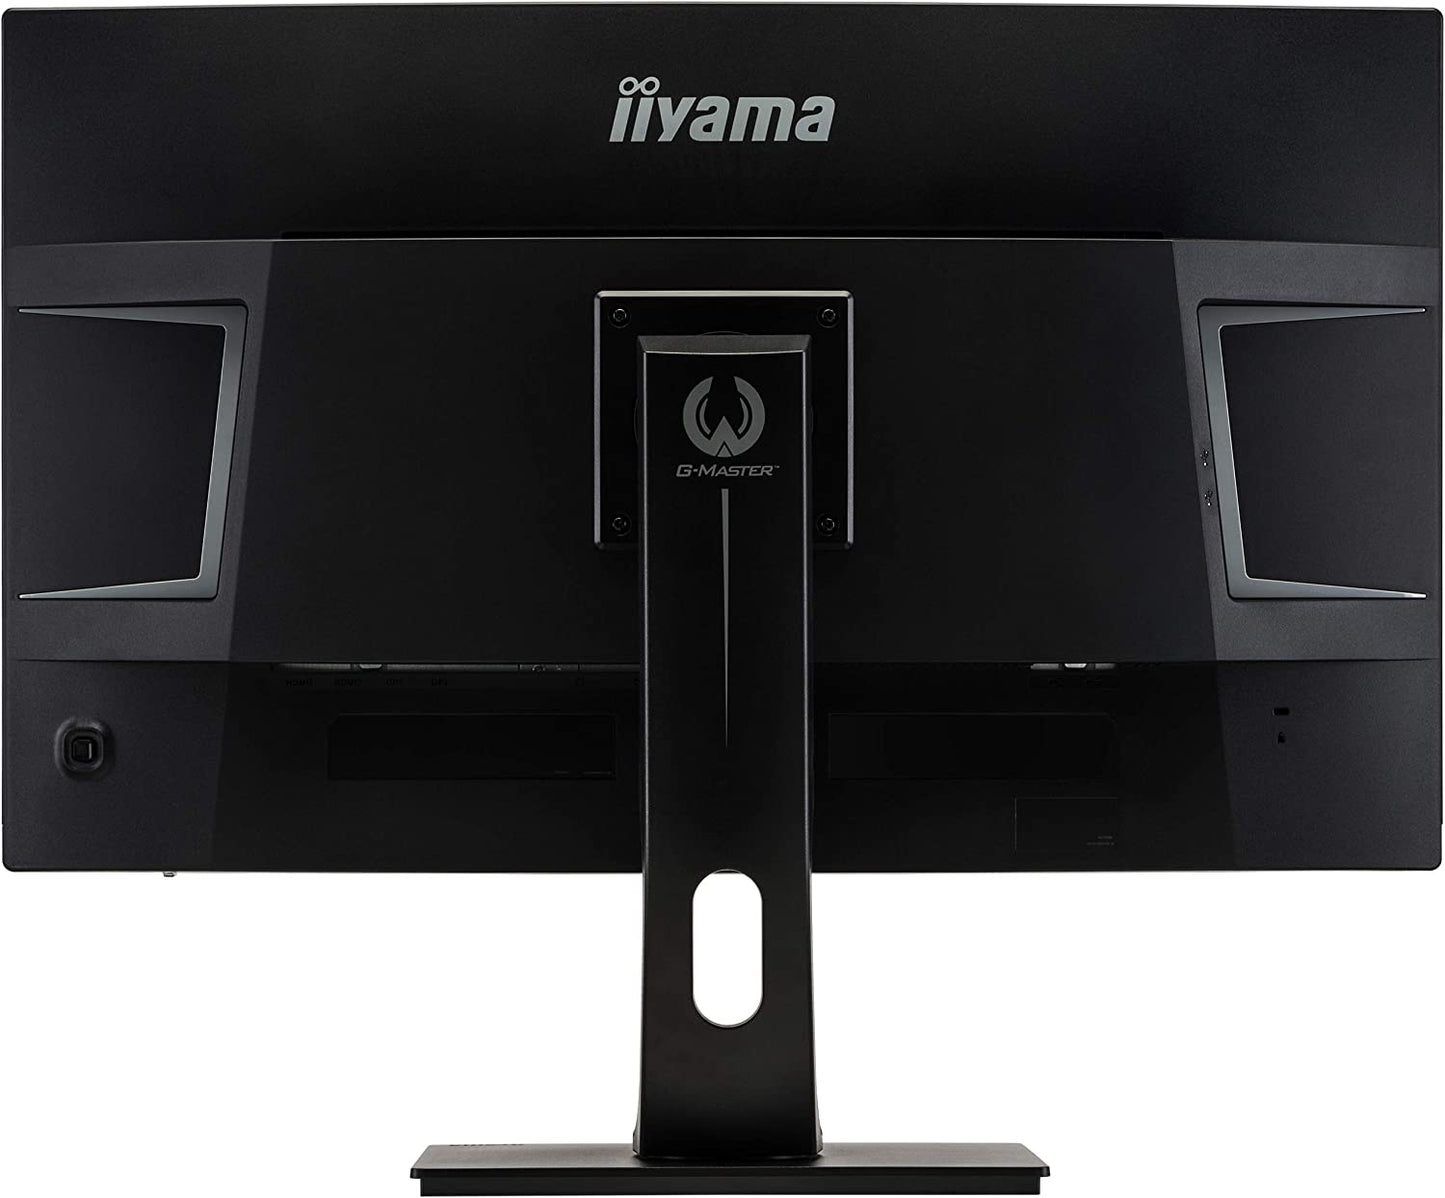 IIyama G-Master Red Eagle gebogener Gaming-Monitor 32 Zoll 